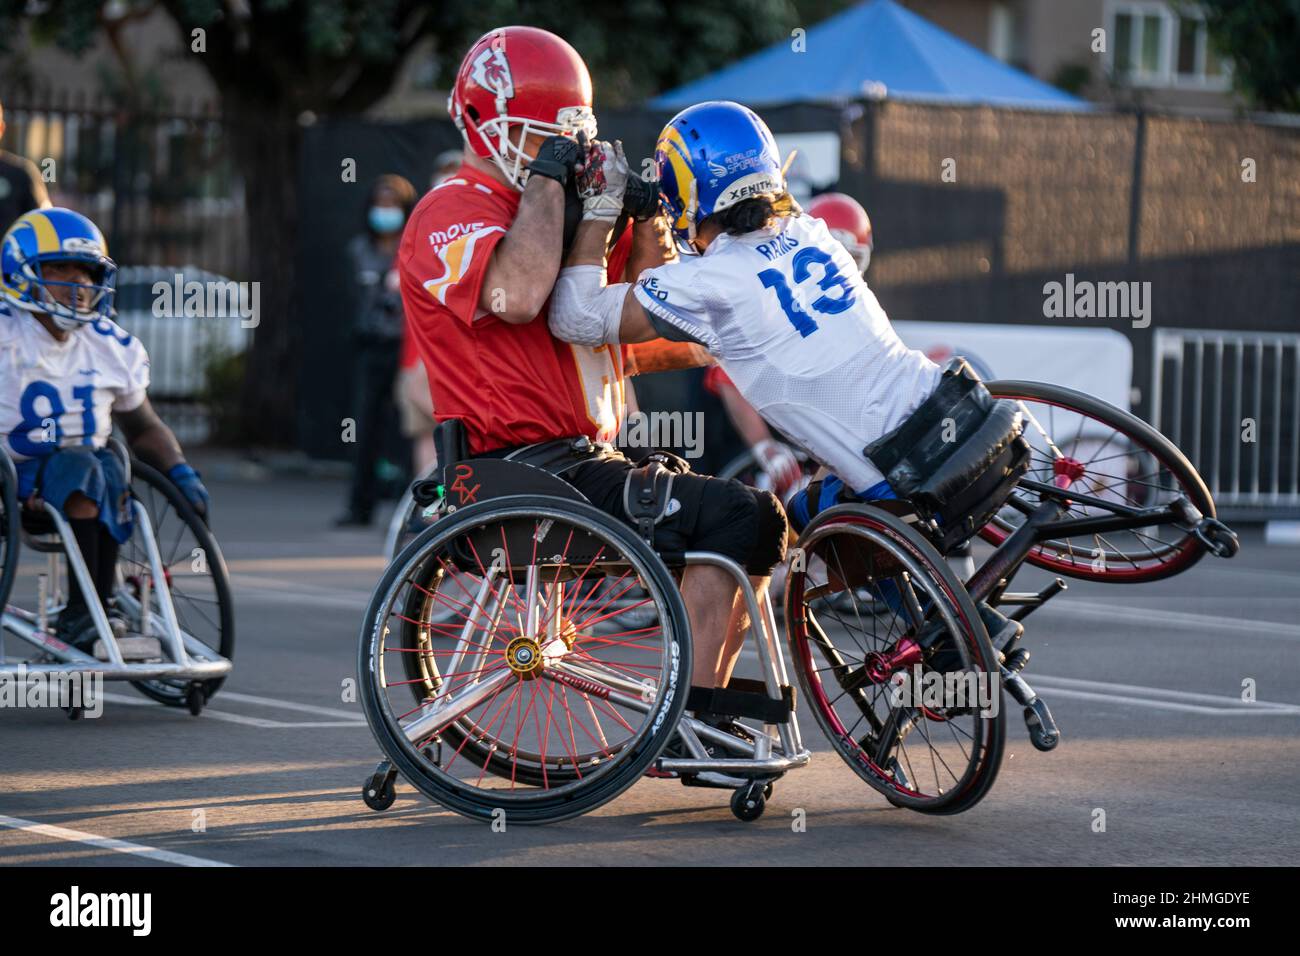 John Teegarden (61) von den Kansas City Chiefs kämpft während der Wheelchair Football League Championship g gegen Robert Lew (13) von den Los Angeles Rams Stockfoto